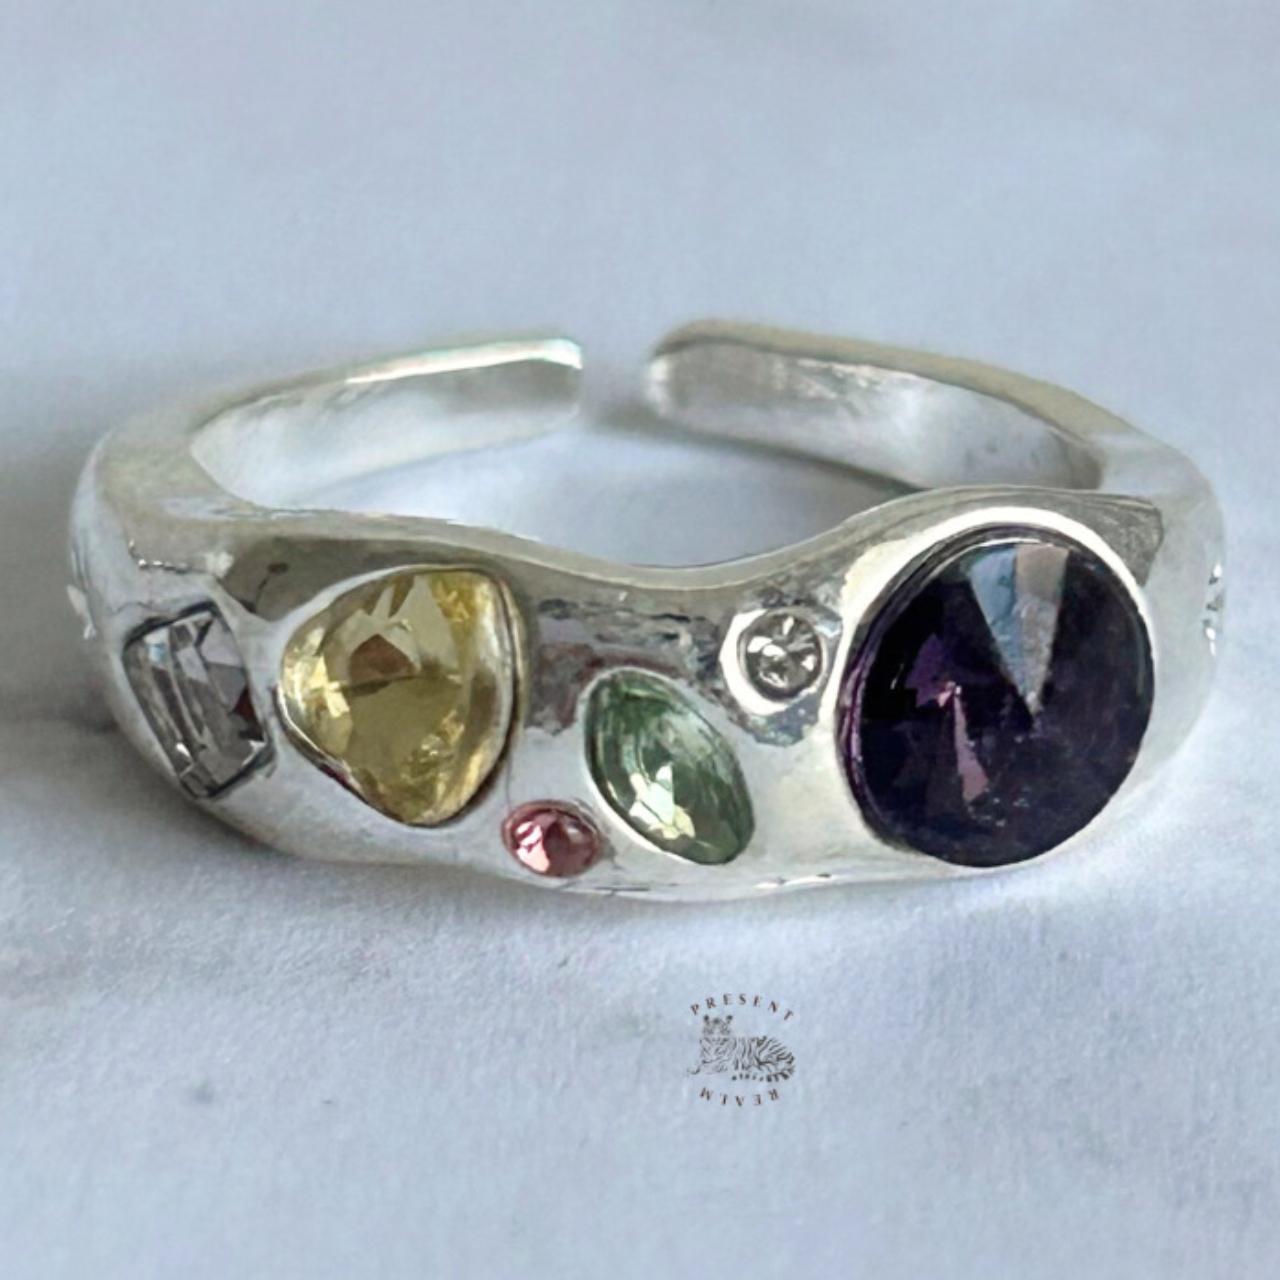 Colorful Gemstones Ring, Chunky Gemstones Ring,... - Depop